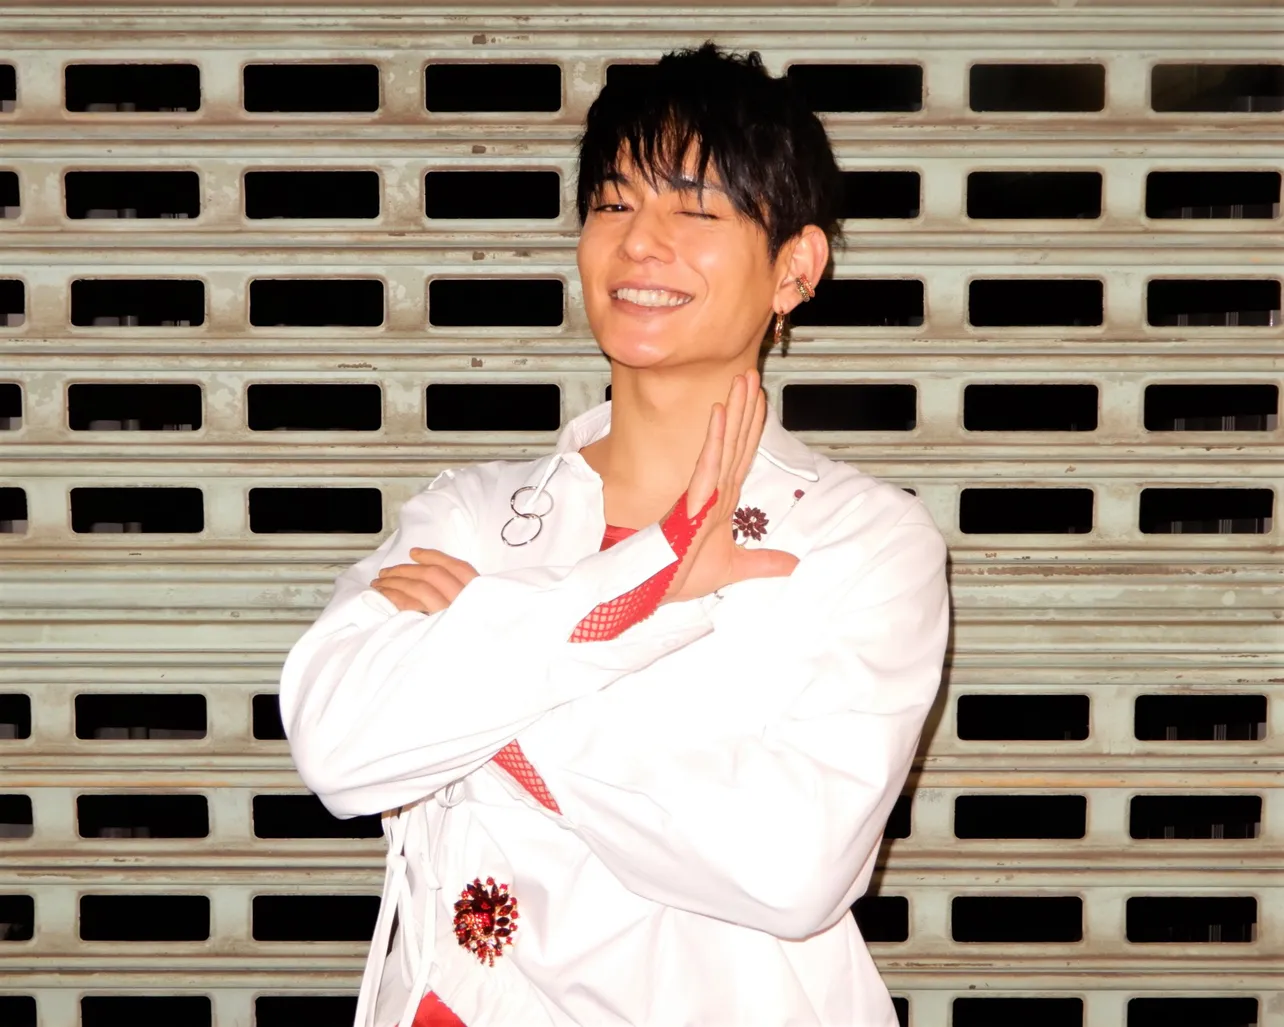 榊原徹士(さかきばら・てつじ)＝1989年12月6日生まれ、愛知県出身。2009年、アイドルユニット「新選組リアン」としてデビュー。解散後は俳優としてテレビや舞台を中心に活動中